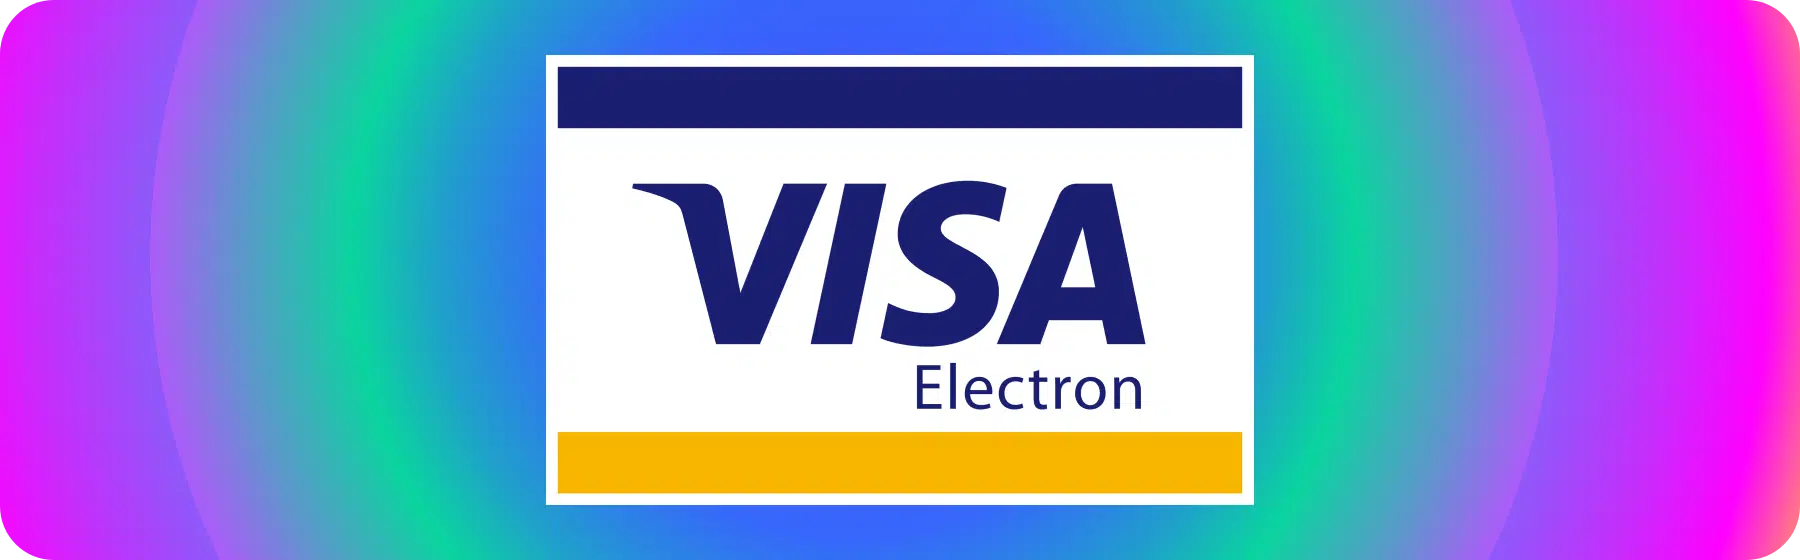 logo for visa electron